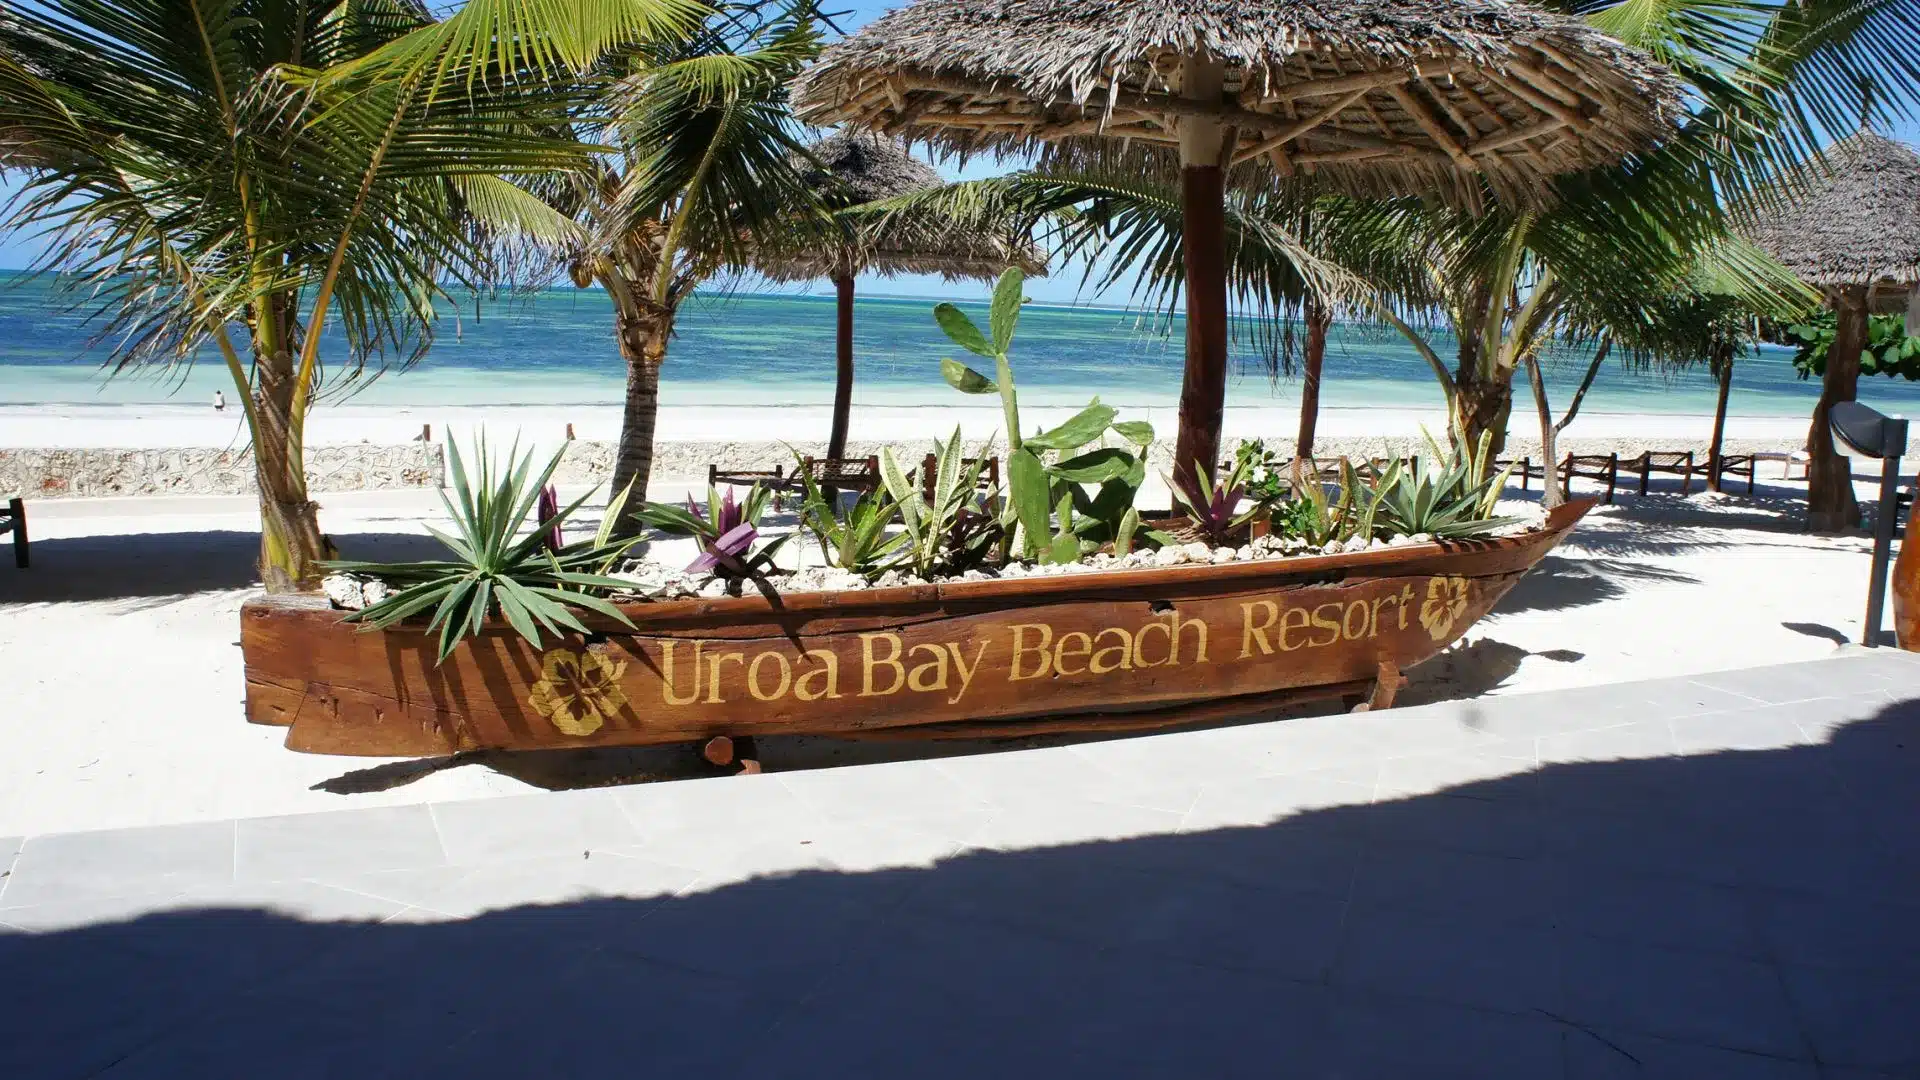 80 Uroa Bay Beach Resort